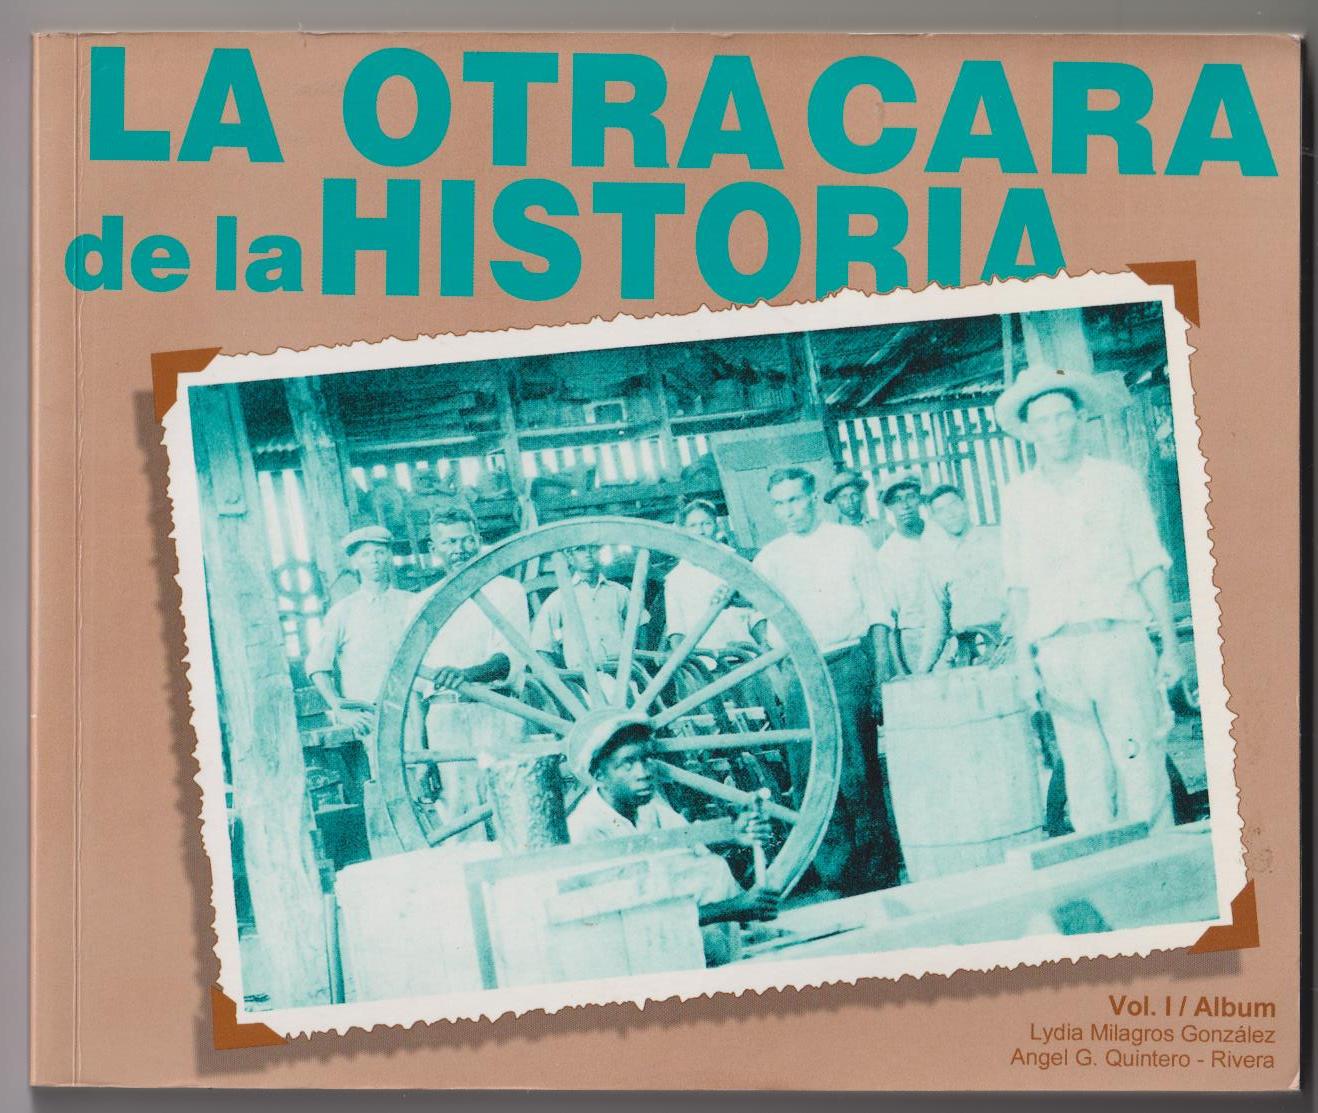 La otra cara de la historia. La Historia de Puerto Rico desde su cara obrera. Vol. I, 1800 - 1925